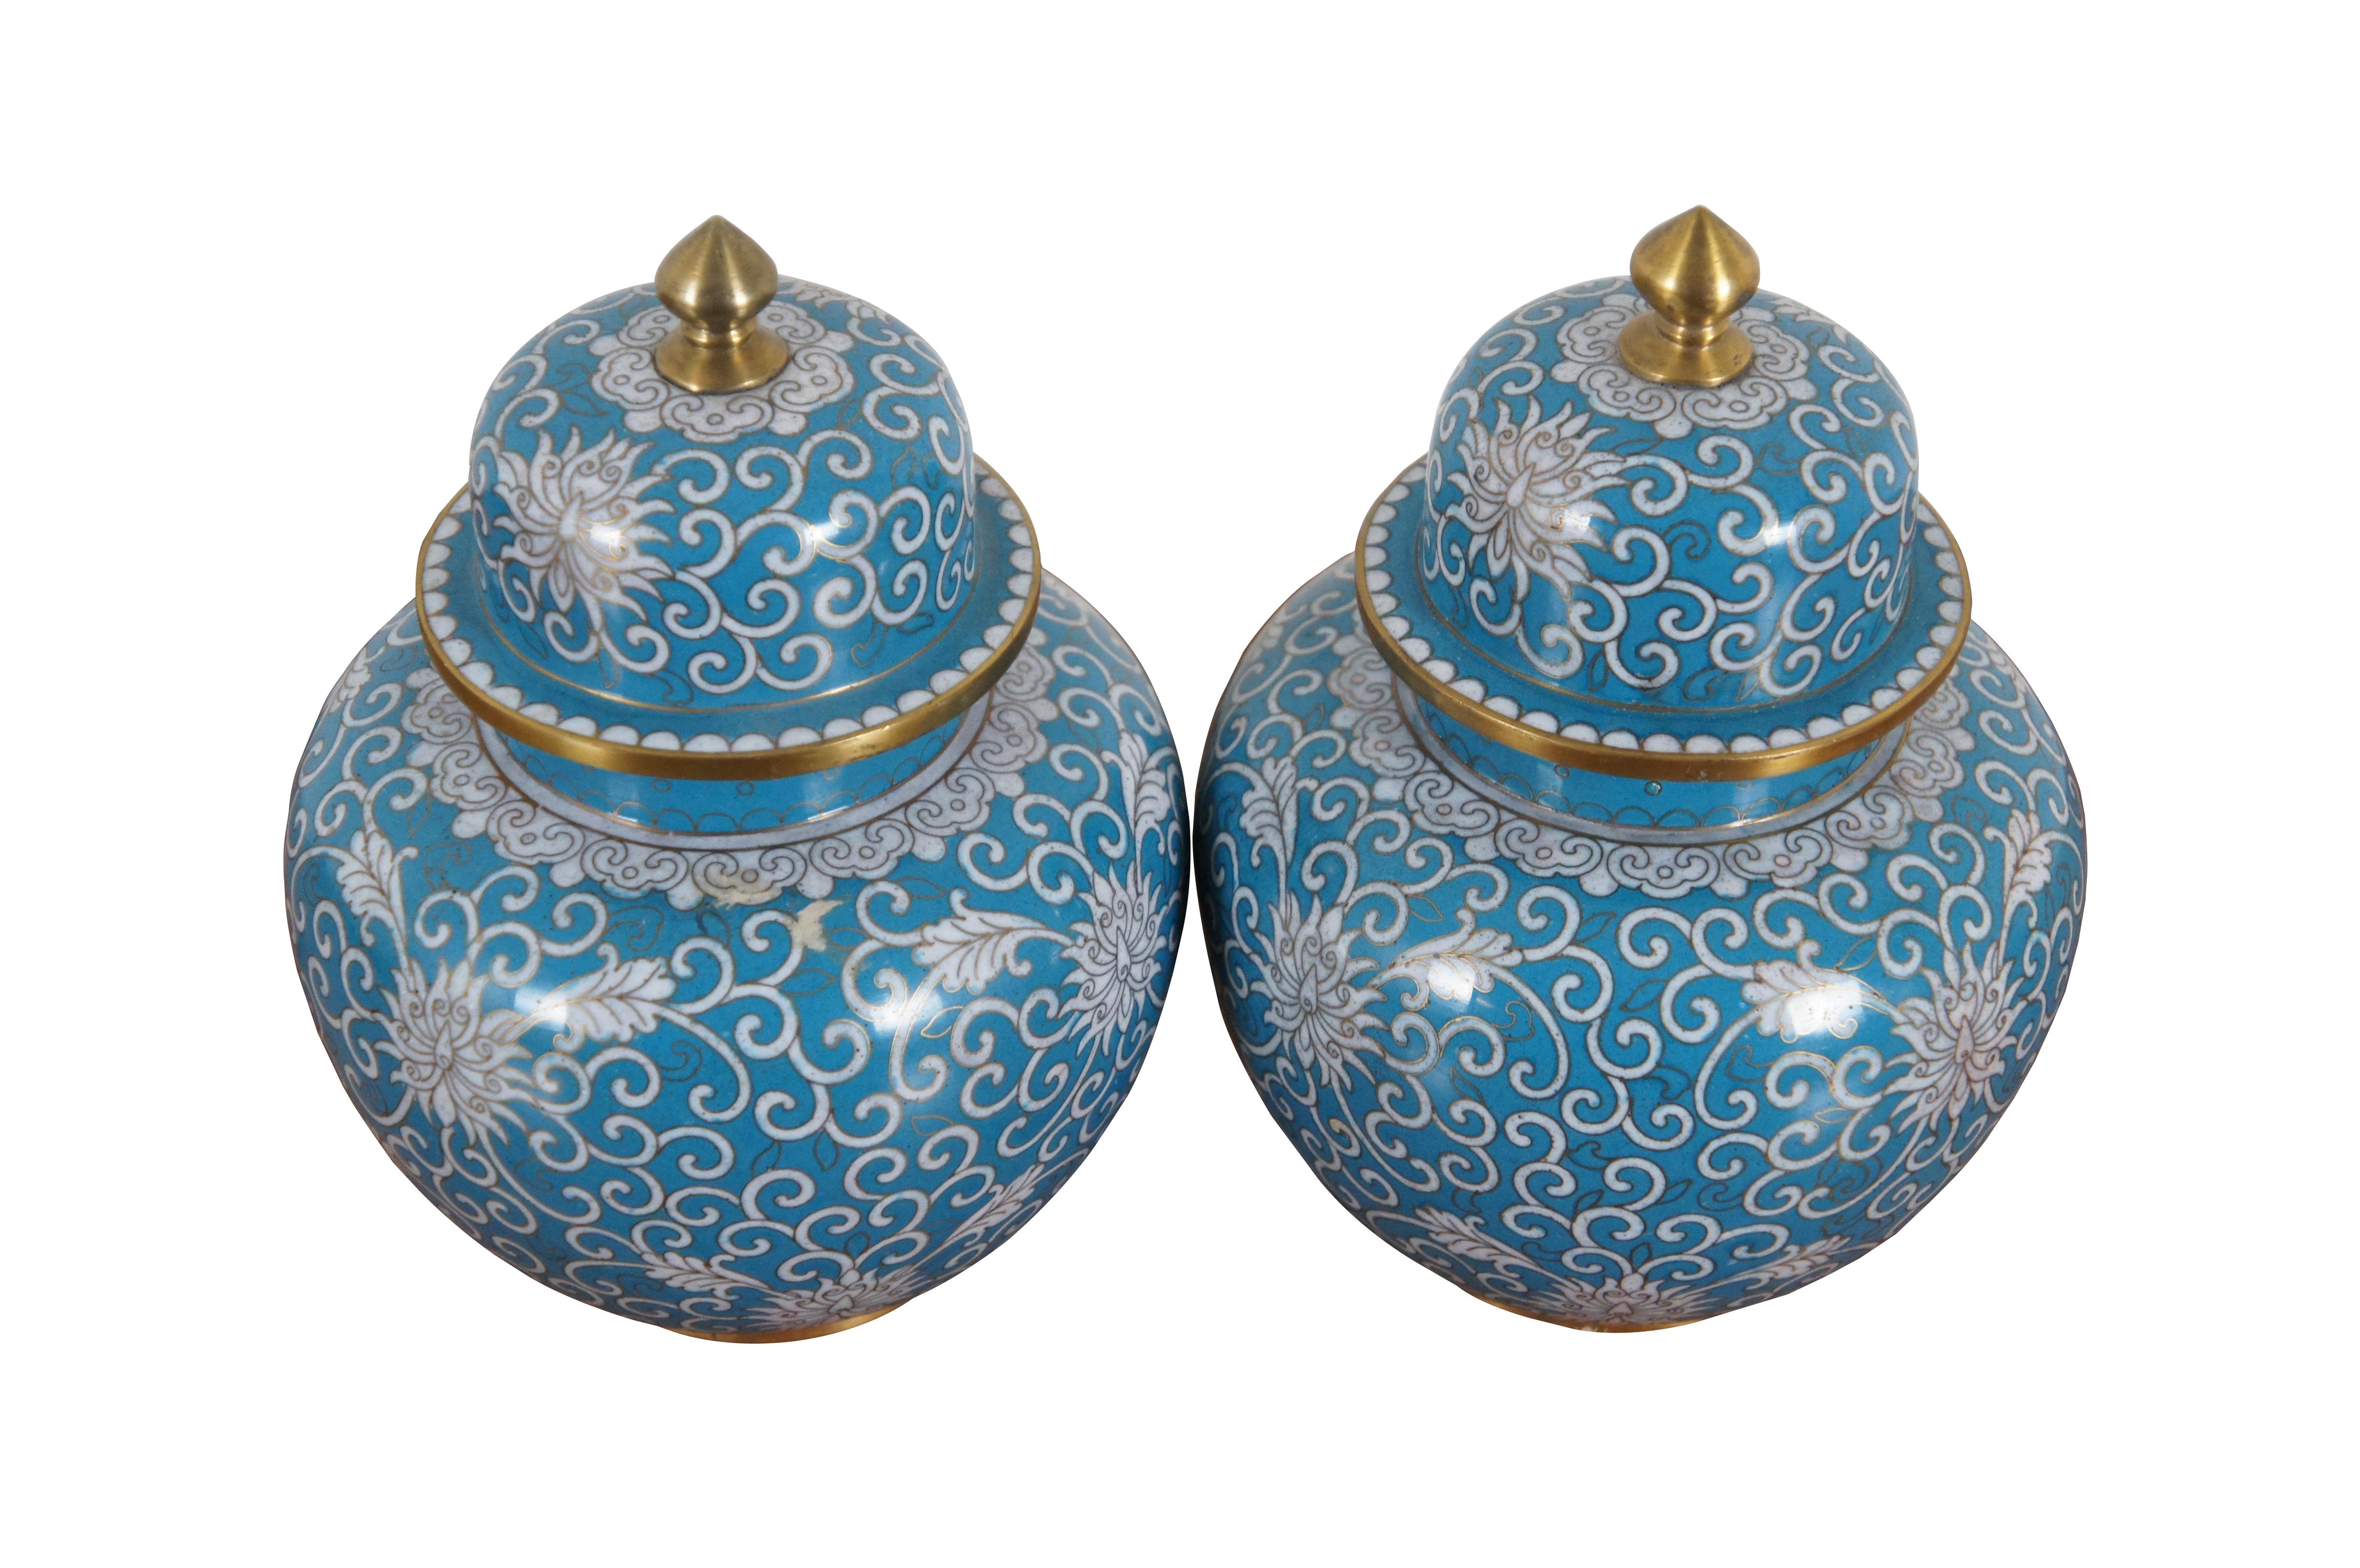 Paire de pots à gingembre anciens en cloisonné avec couvercles présentant un motif de chrysanthèmes et de vrilles tourbillonnantes en blanc sur fond bleu turquoise. Fabriqué en Chine, vers 1890-1910

Dimensions :
5,5